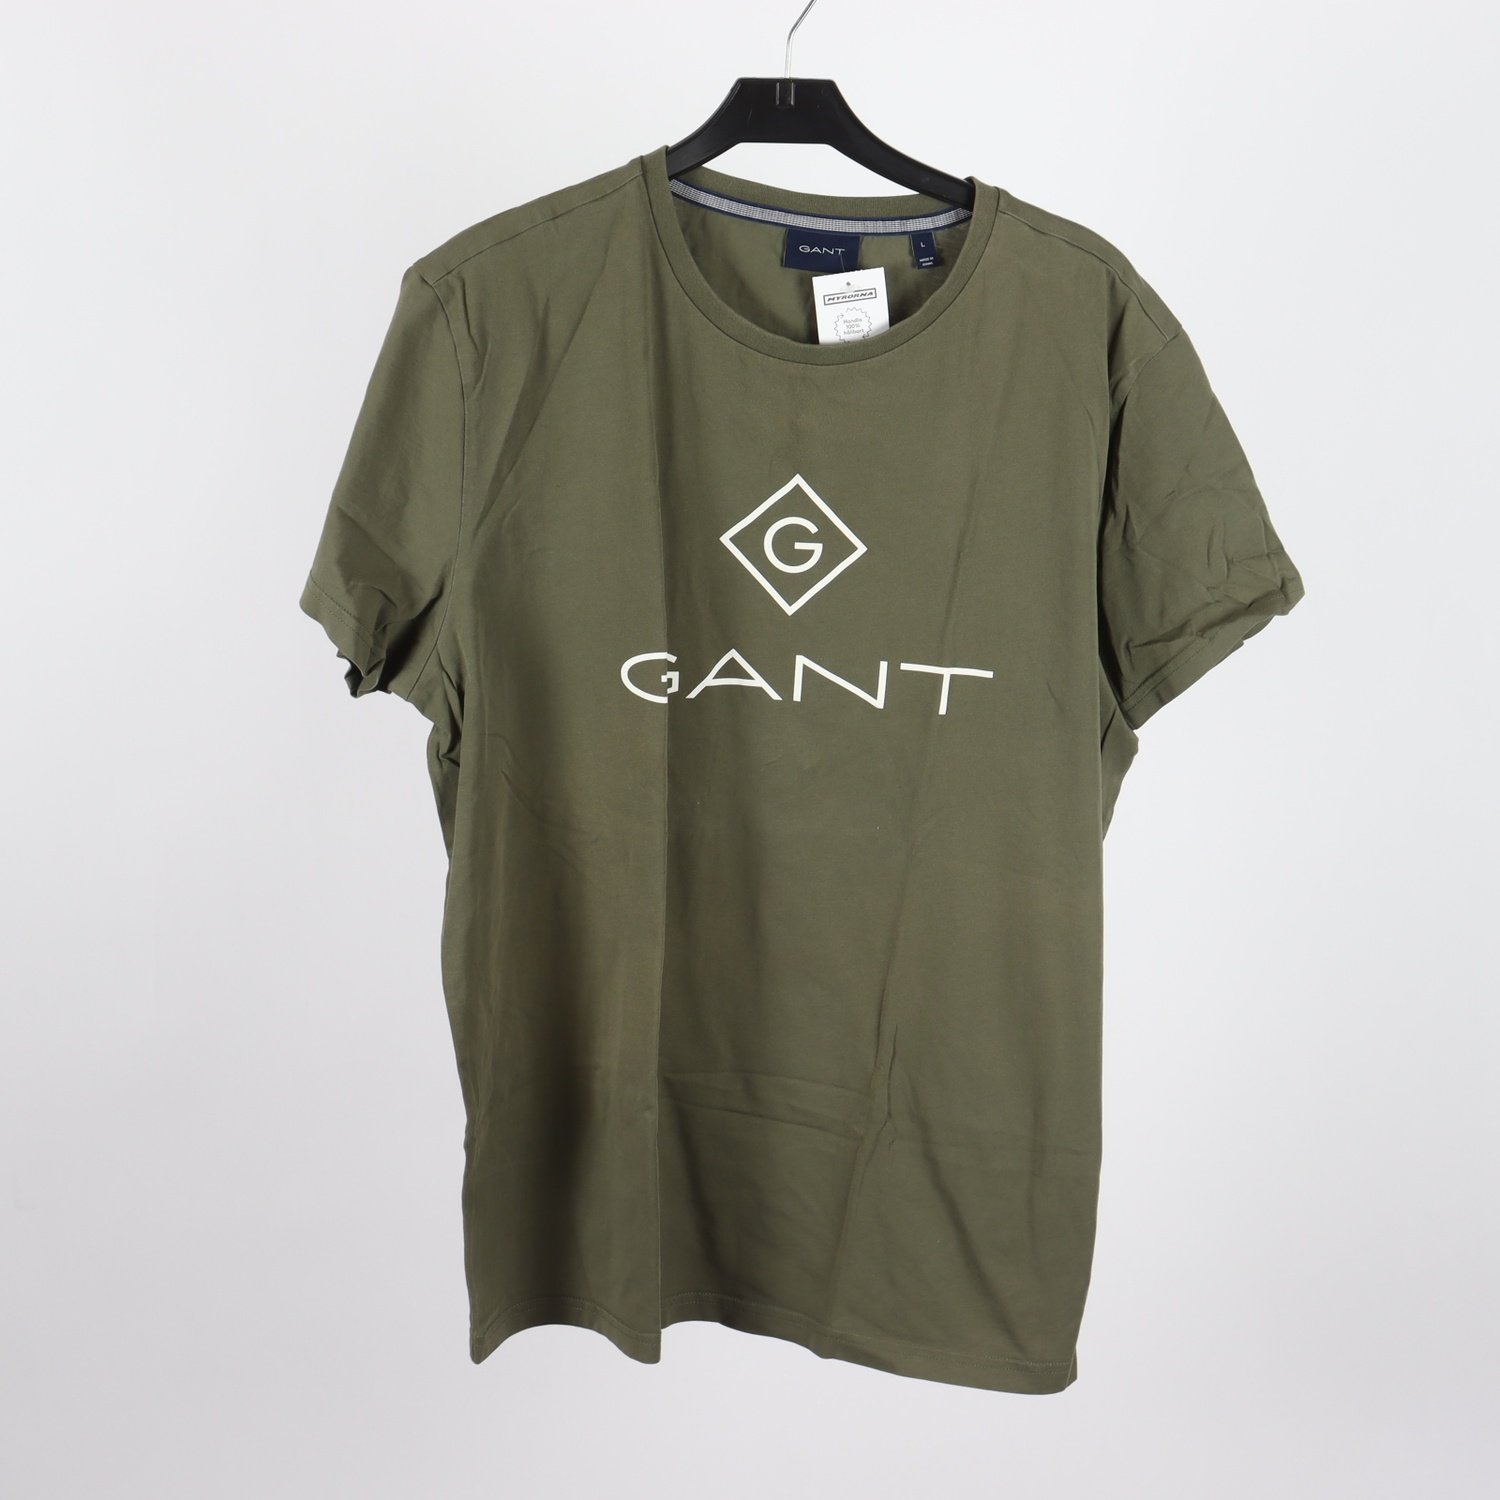 T-shirt, GANT, grön, stl. L